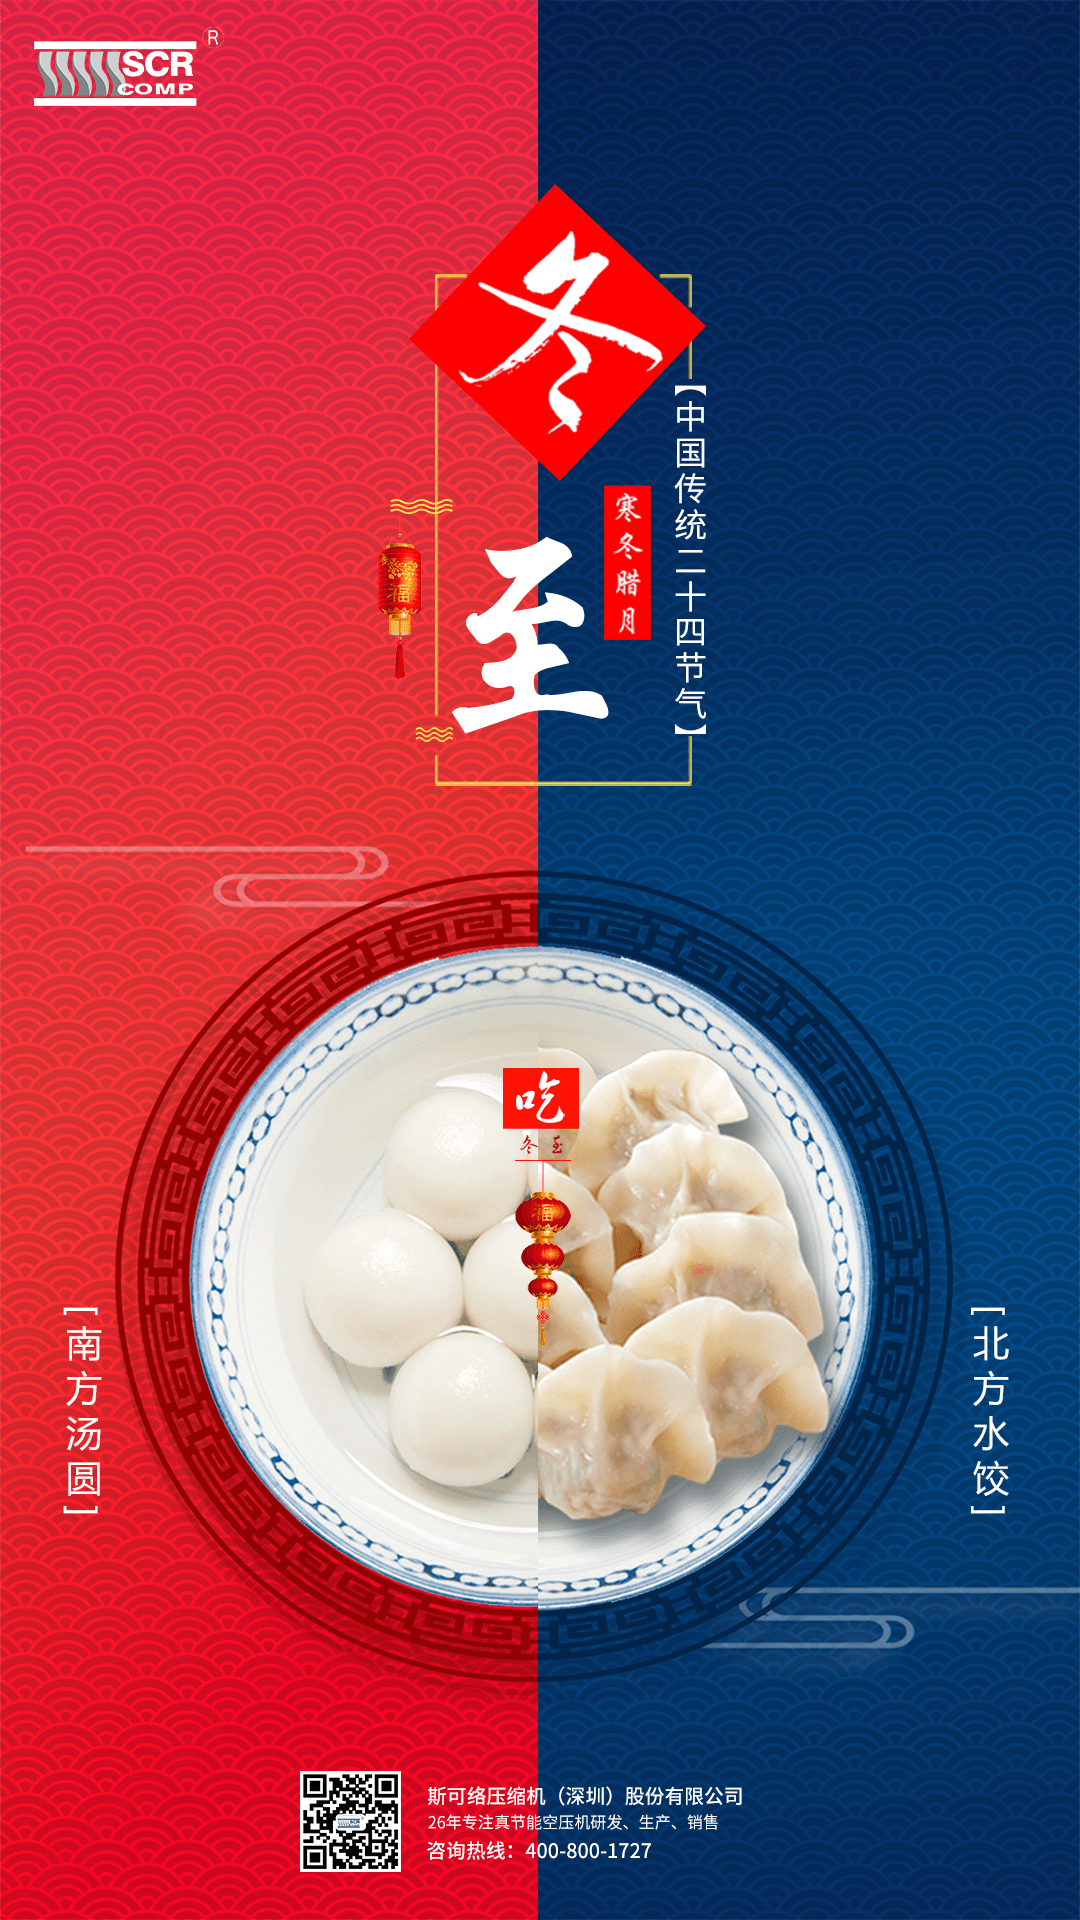 冬至快乐!你是吃饺子?还是吃汤圆?我两样都选?你呢?